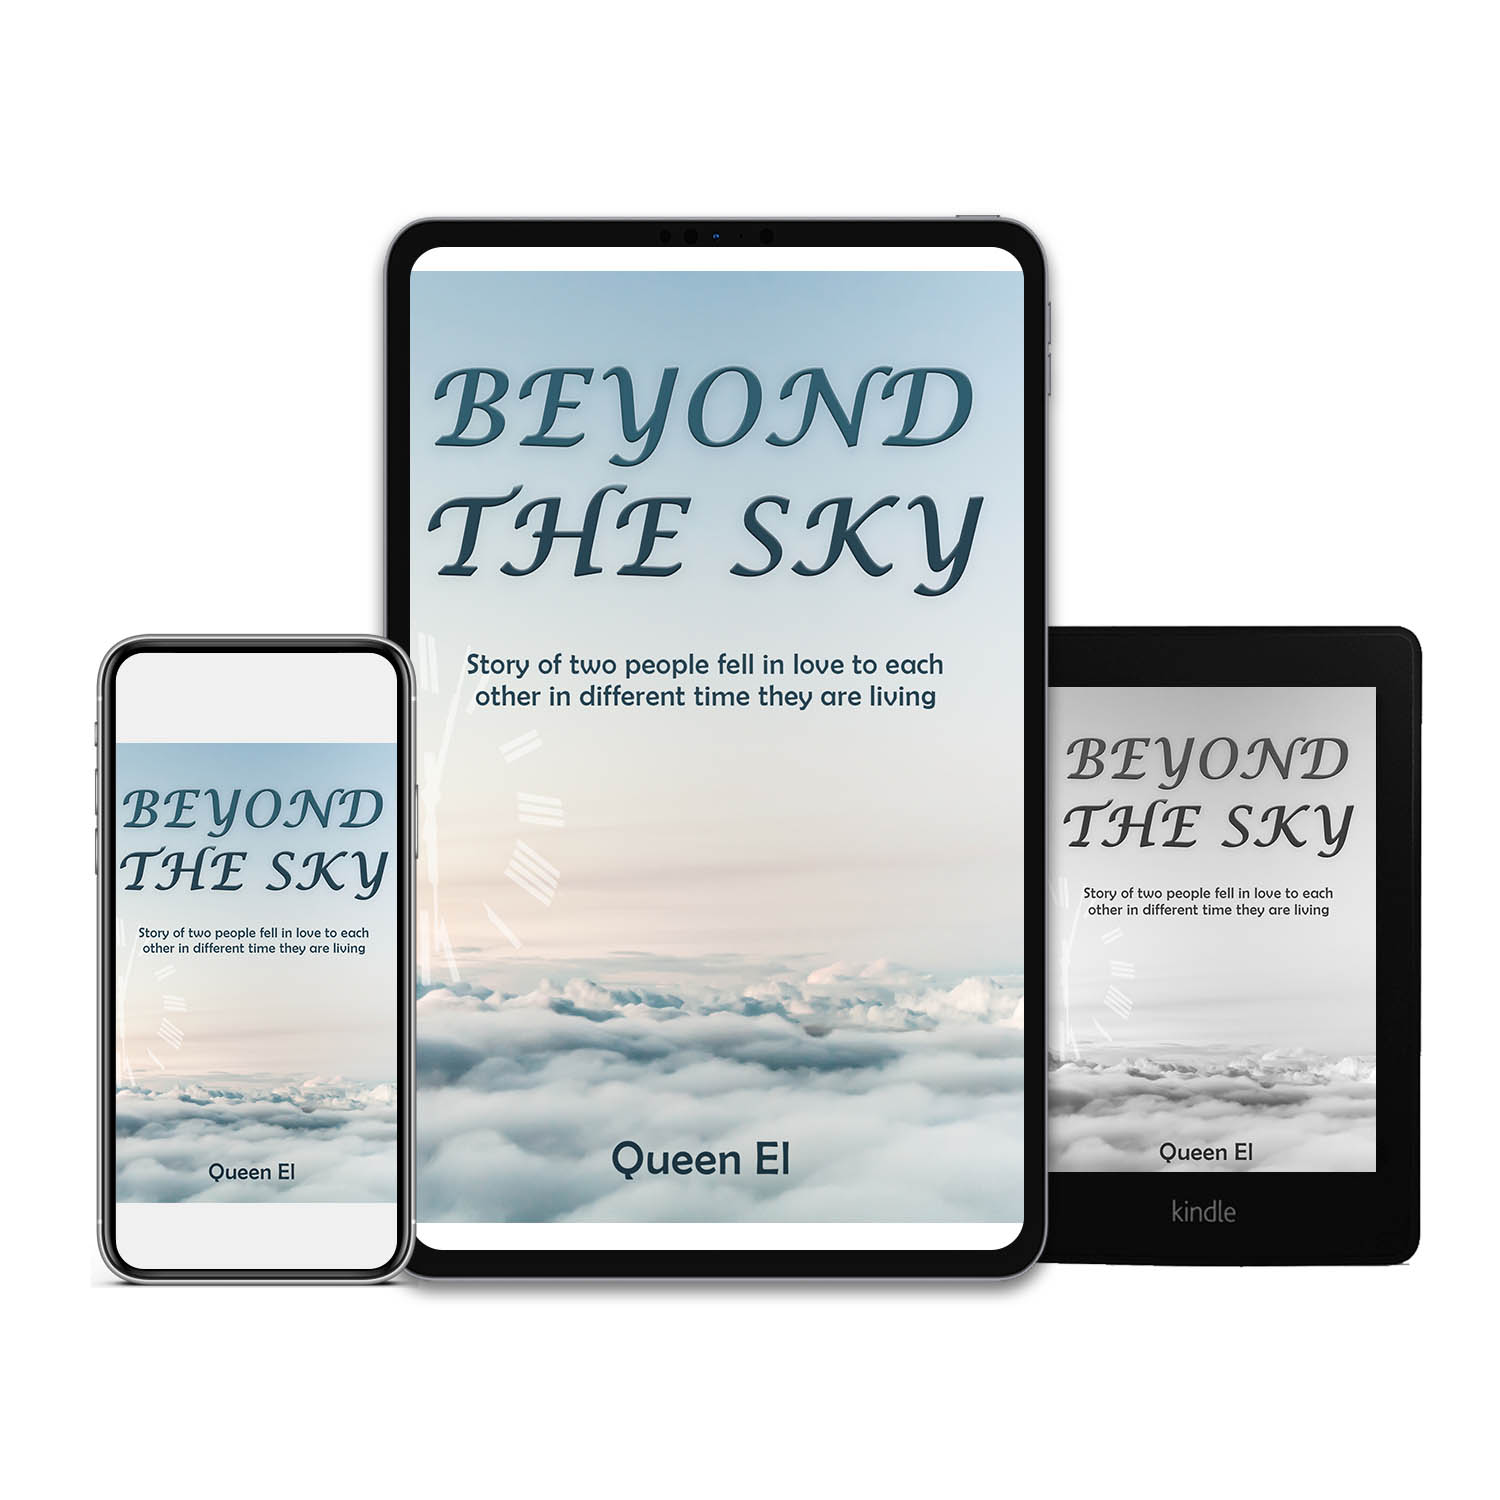 bookconsilio-portfolio-beyond-the-sky-Countries-ebookcoverdesign